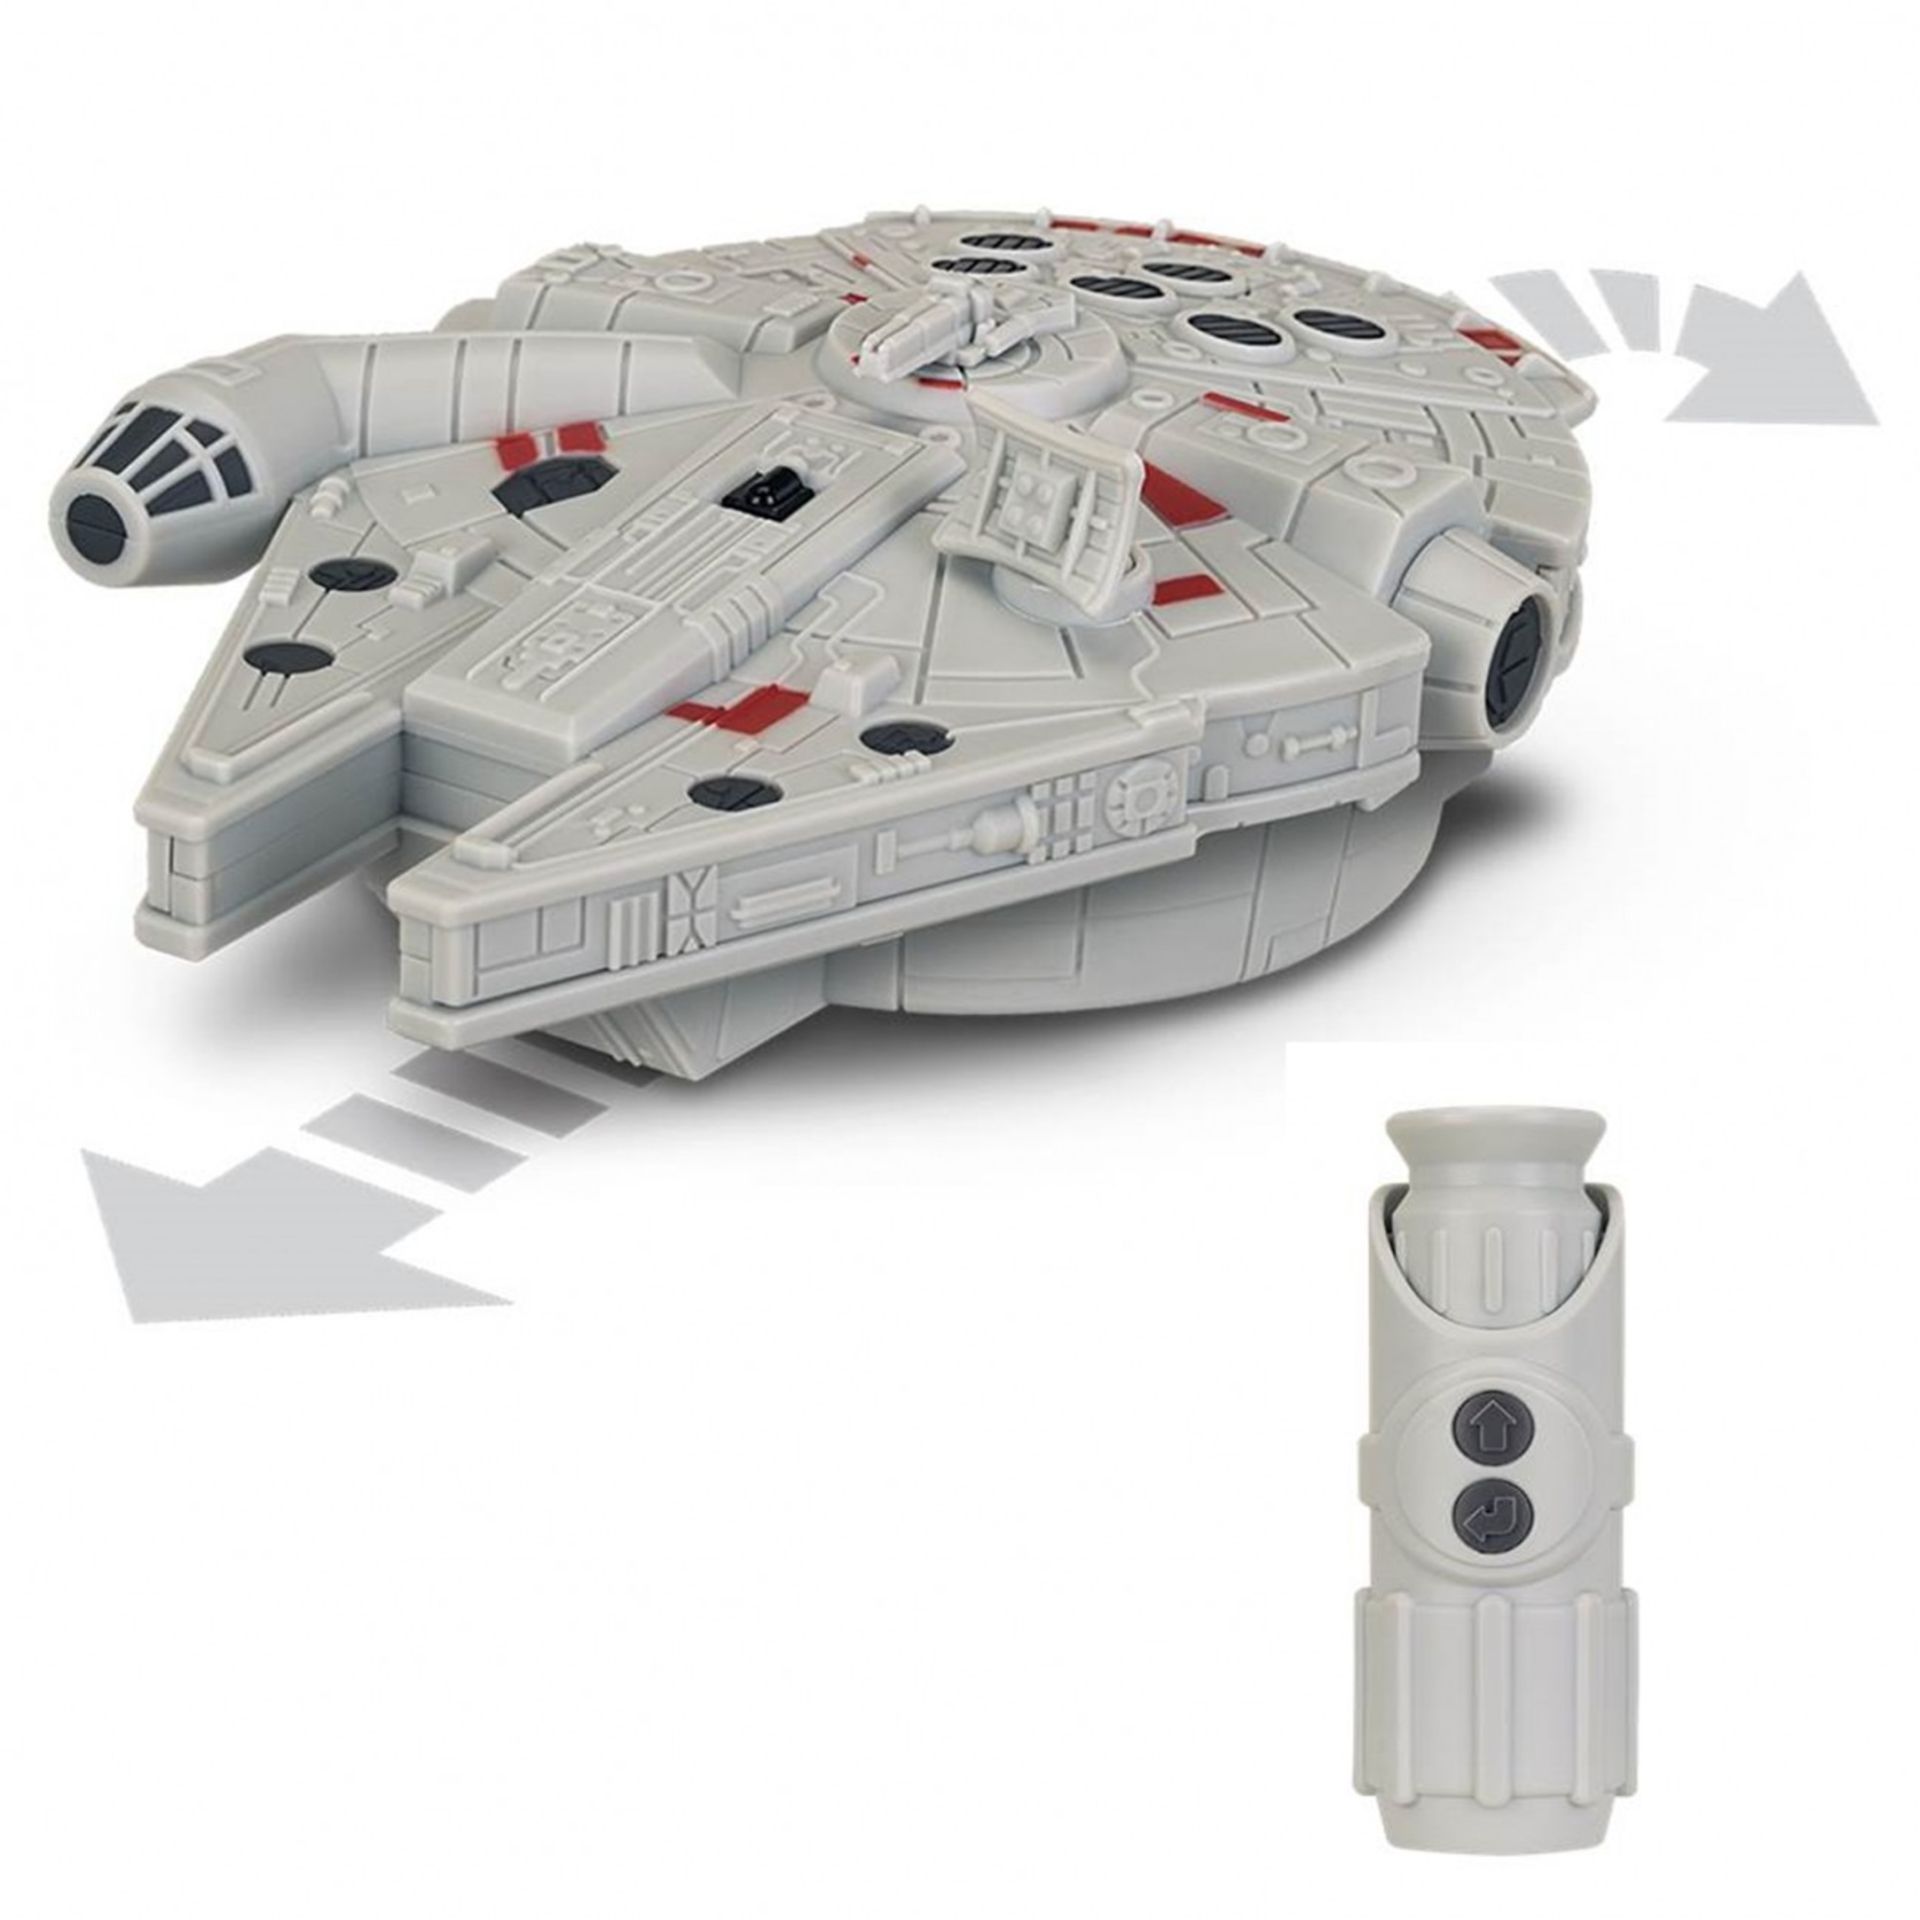 V Brand New Star Wars Millenium Falcon Remote Control Vehicle Amazon Price £23.91